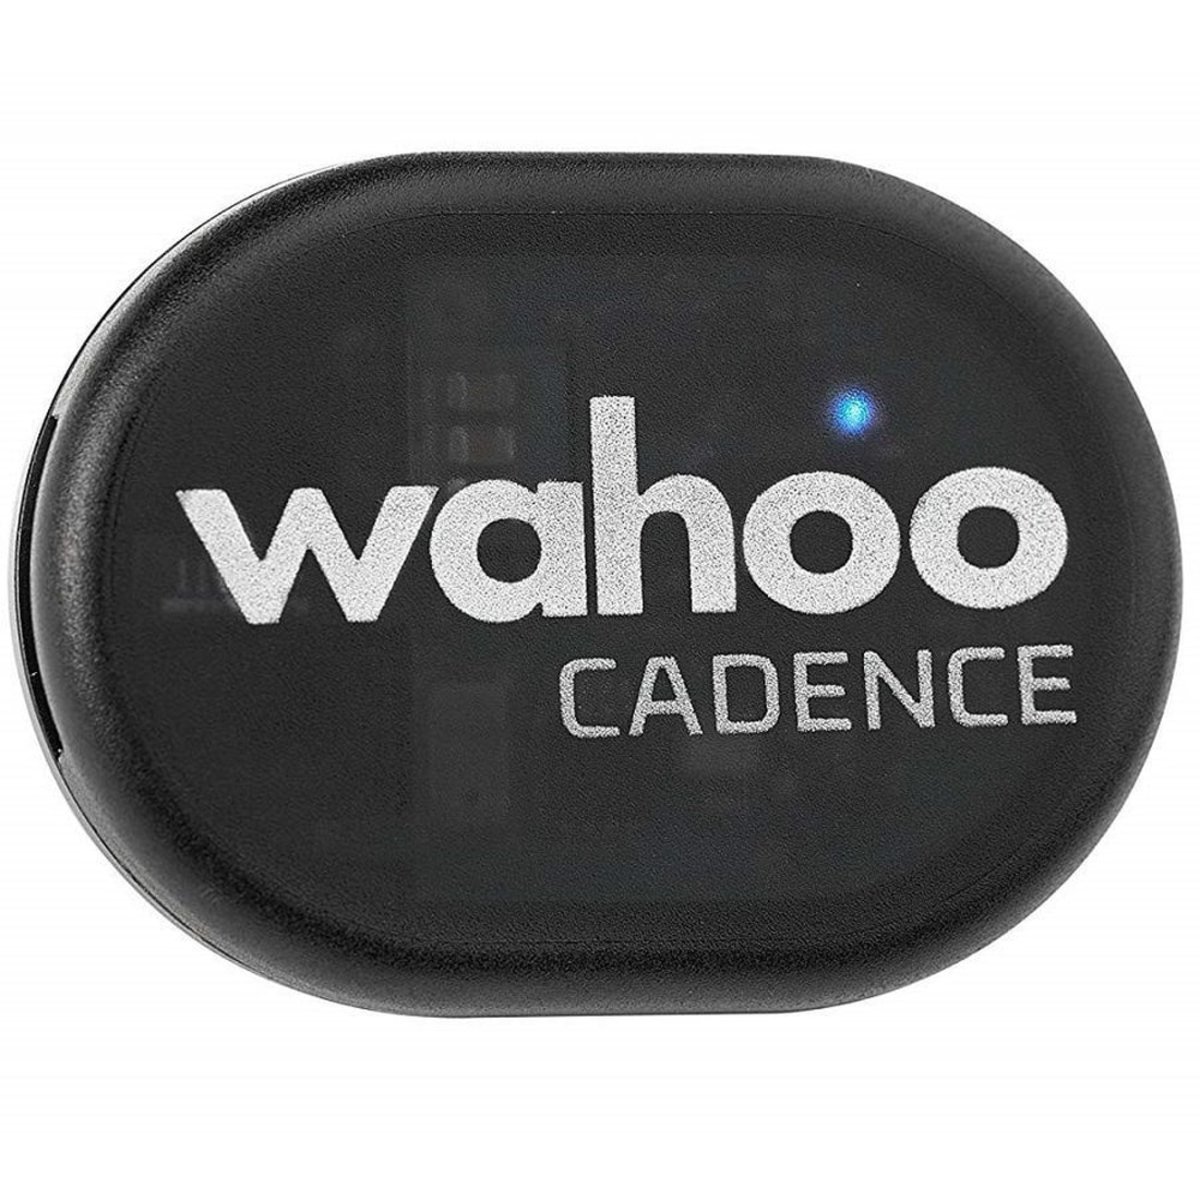 Датчик каденсу Wahoo RPM Cadence Sensor (BT/ANT+) WFPODCAD2